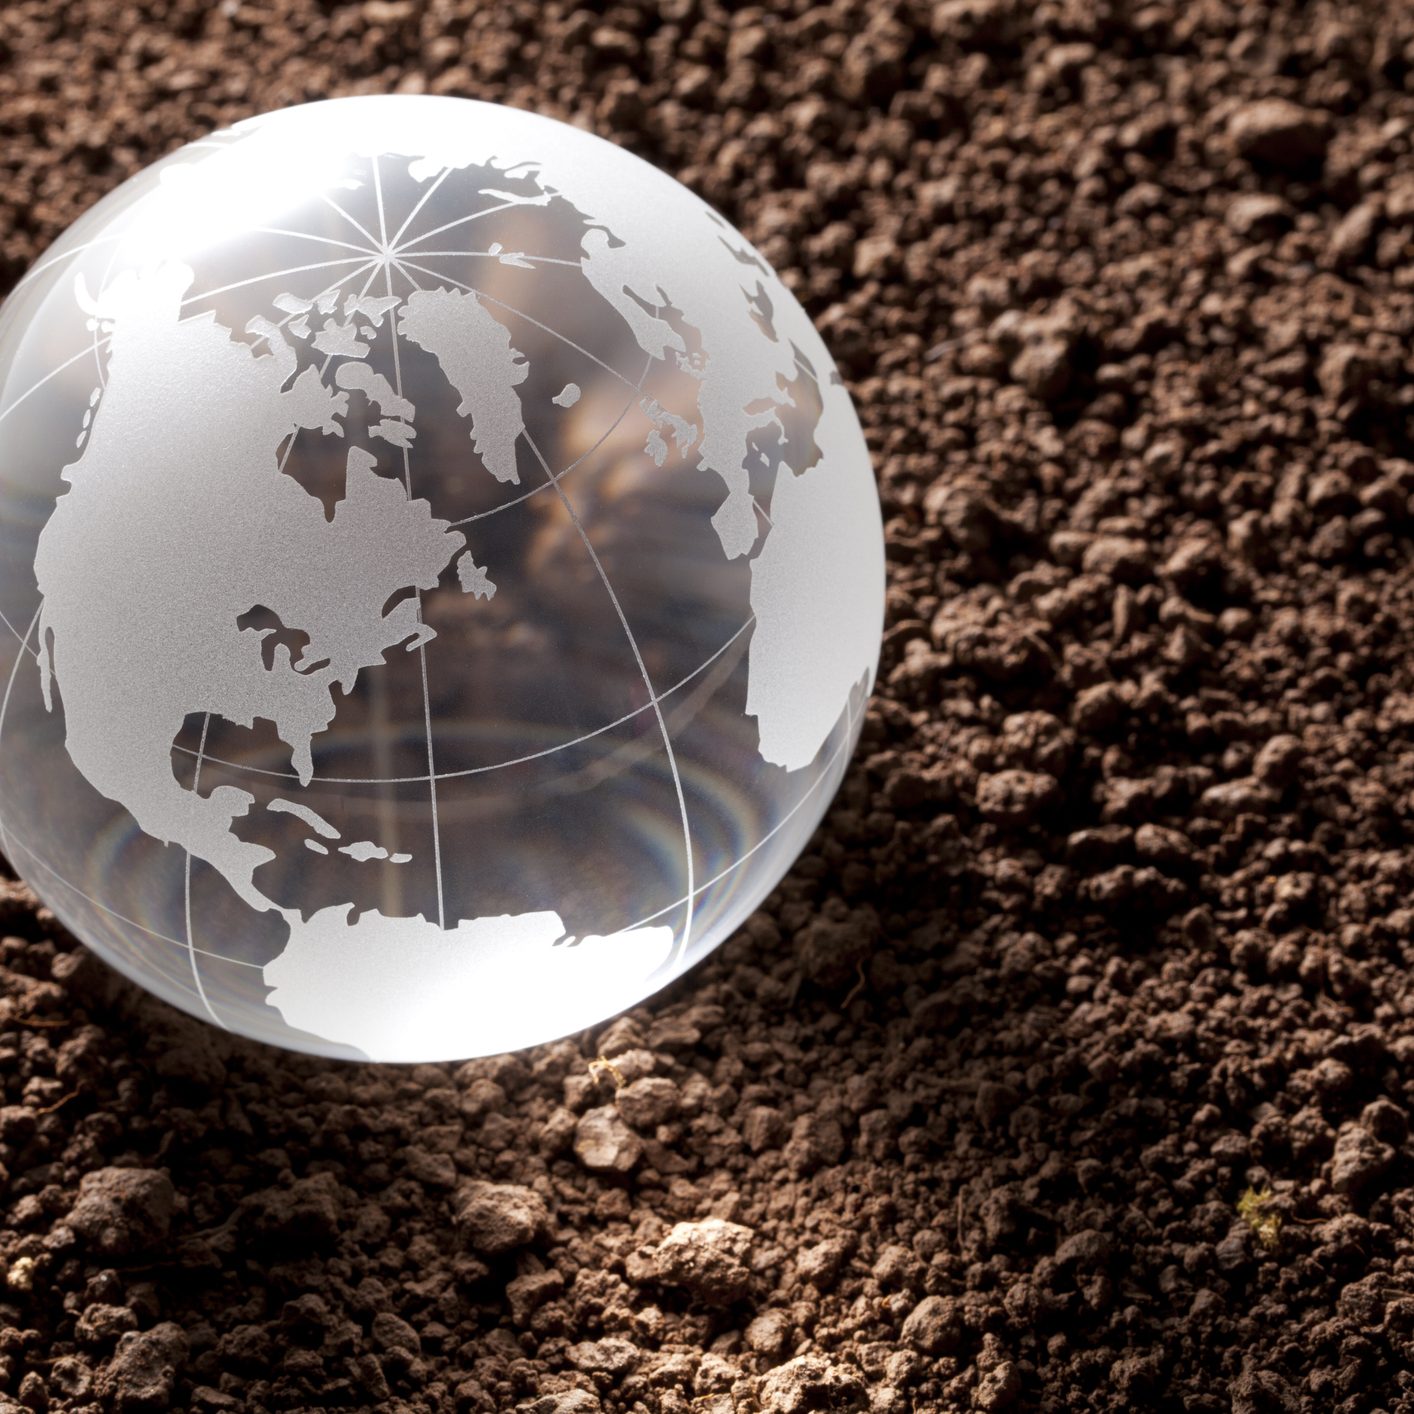 Globe on the soil.